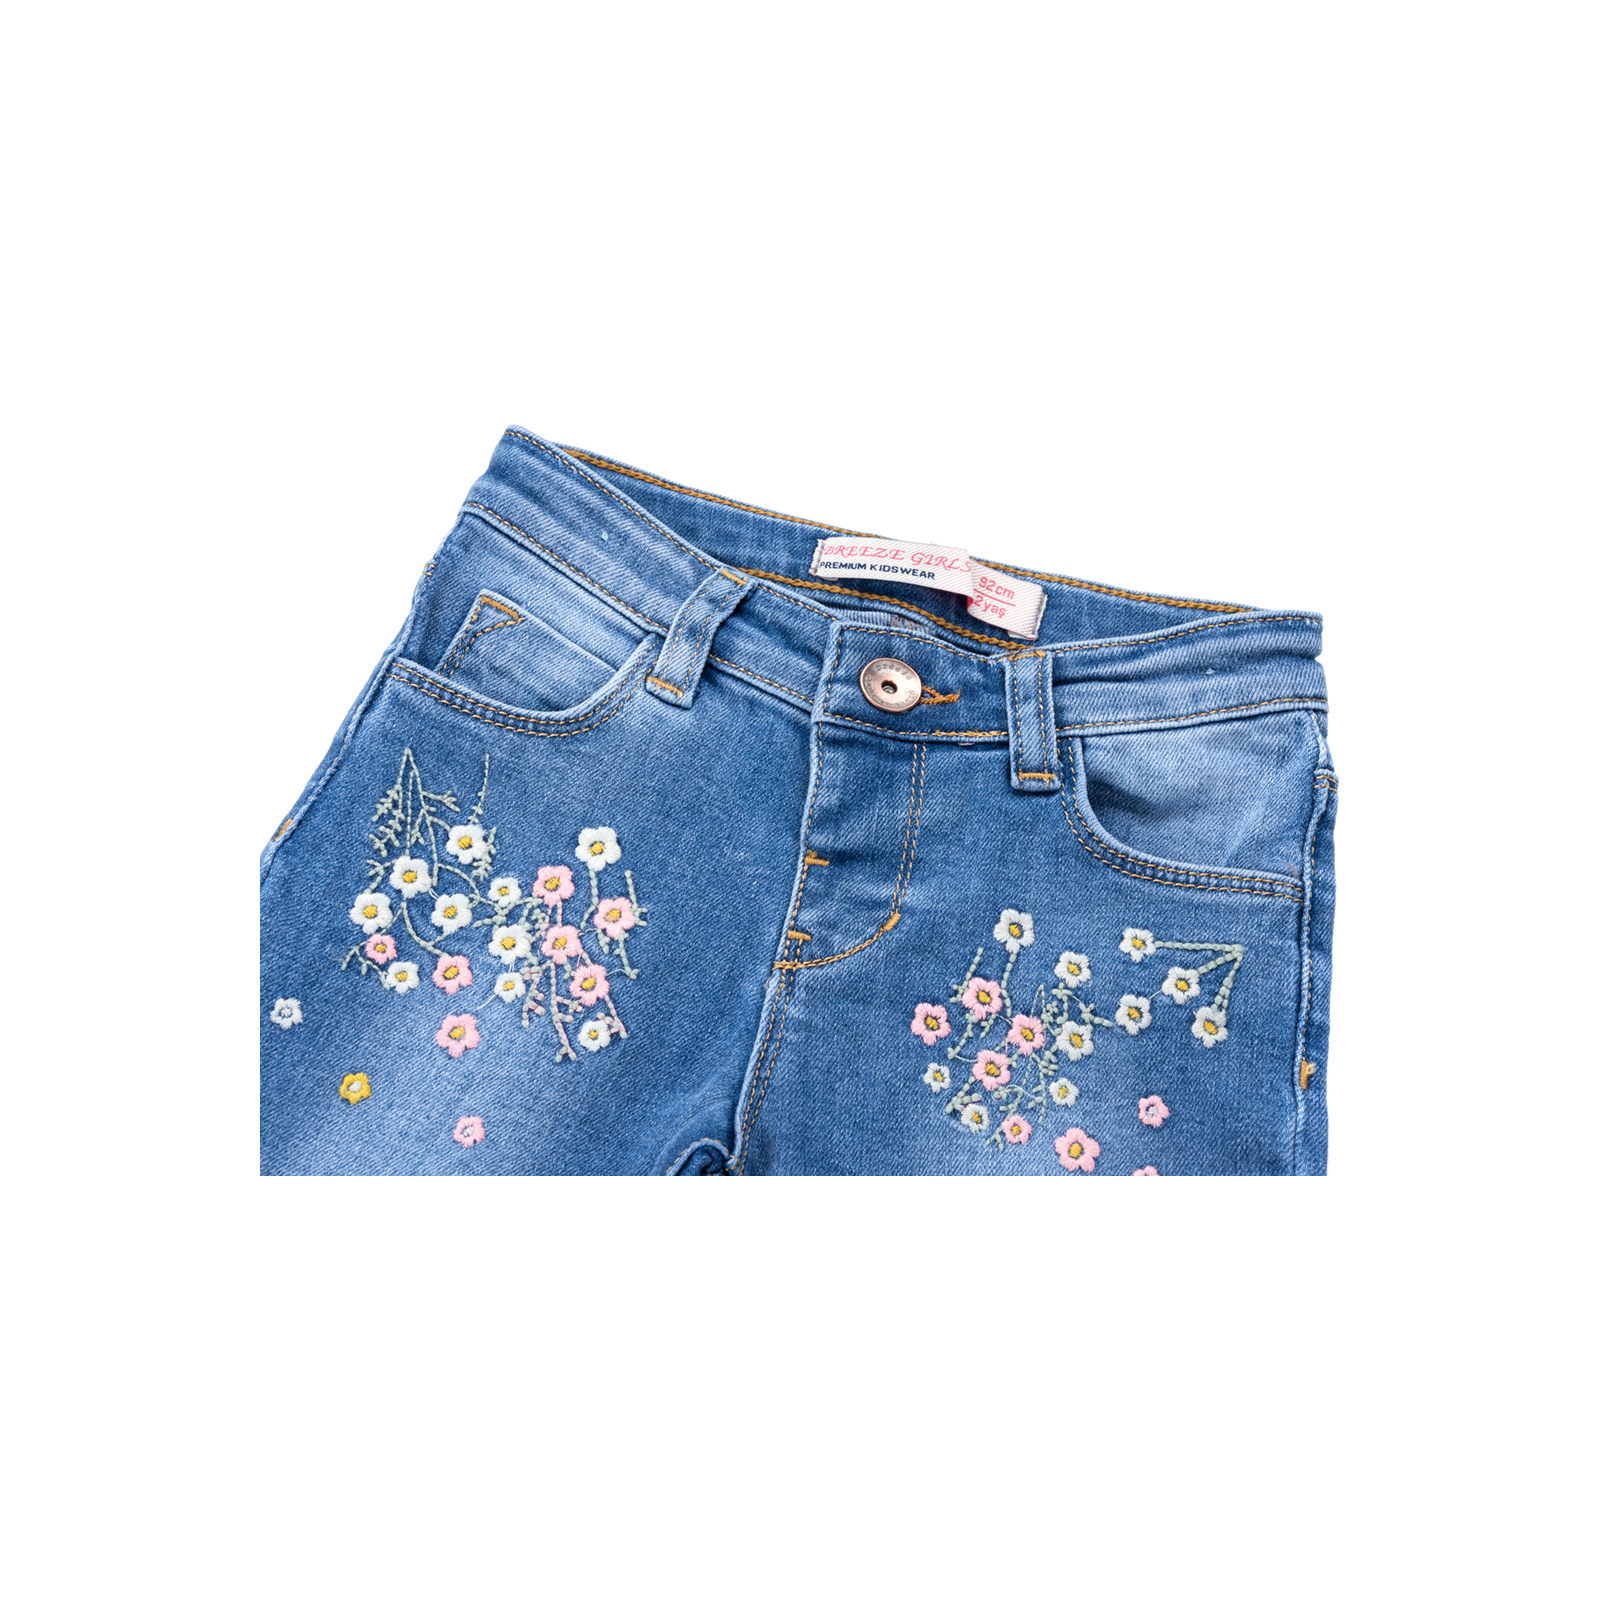 Джинсы Breeze джинсовые с цветочками (OZ-17703-92G-jeans) изображение 2